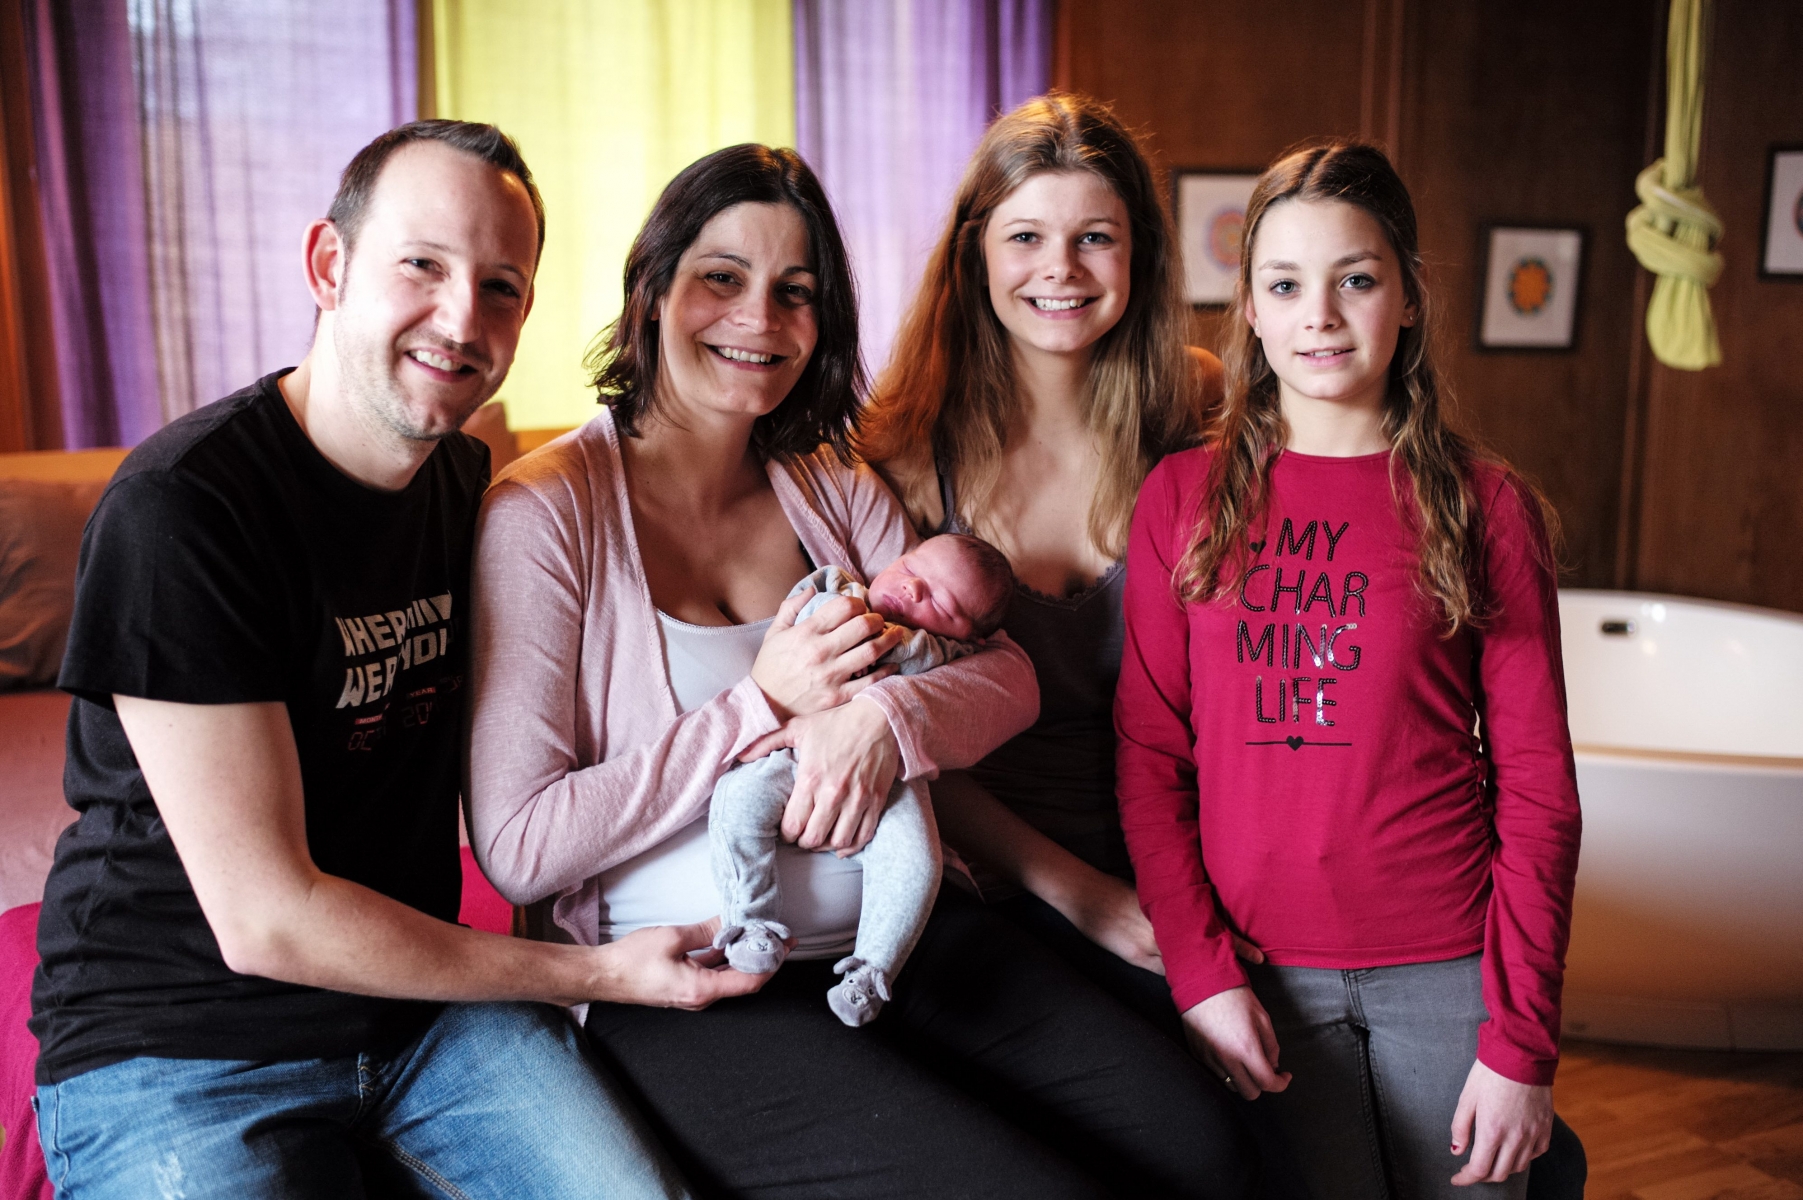 Le premier bébé de l'année 2016 se prénomme Alexis et il fait le bonheur de ses parents Charlotte et Laurent, et de ses soeurs Clara et Eline.